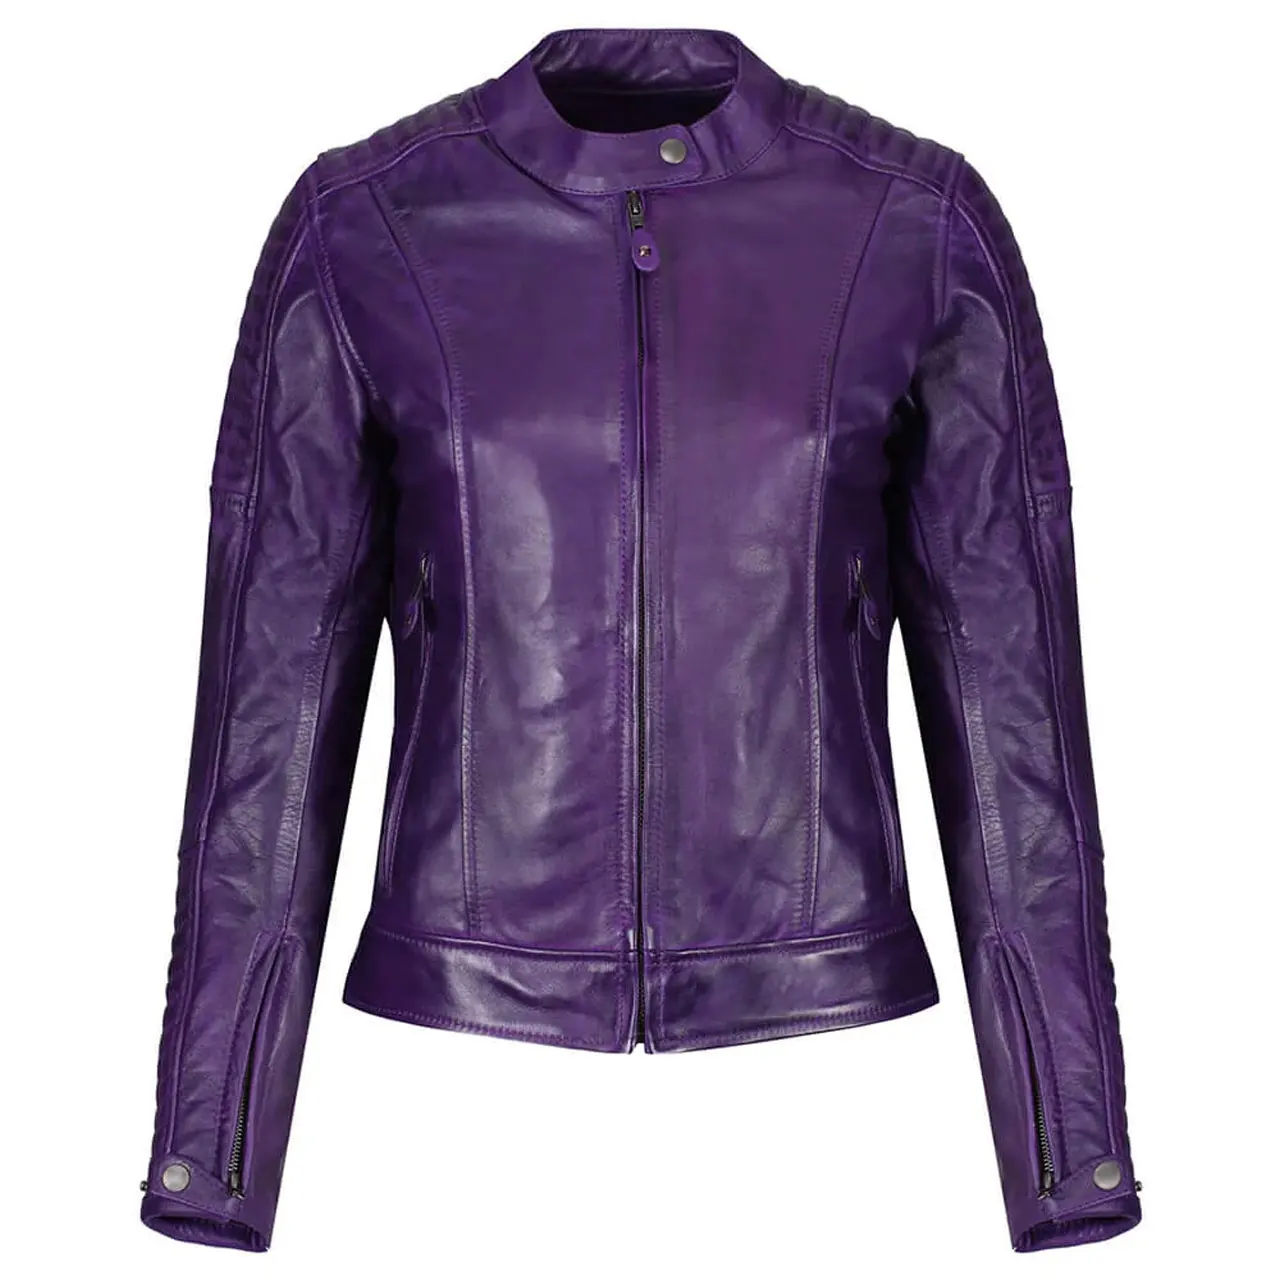 Jaqueta de couro de moto feminina mais popular com zíperes nas costas, jaqueta feminina de beleza em cores